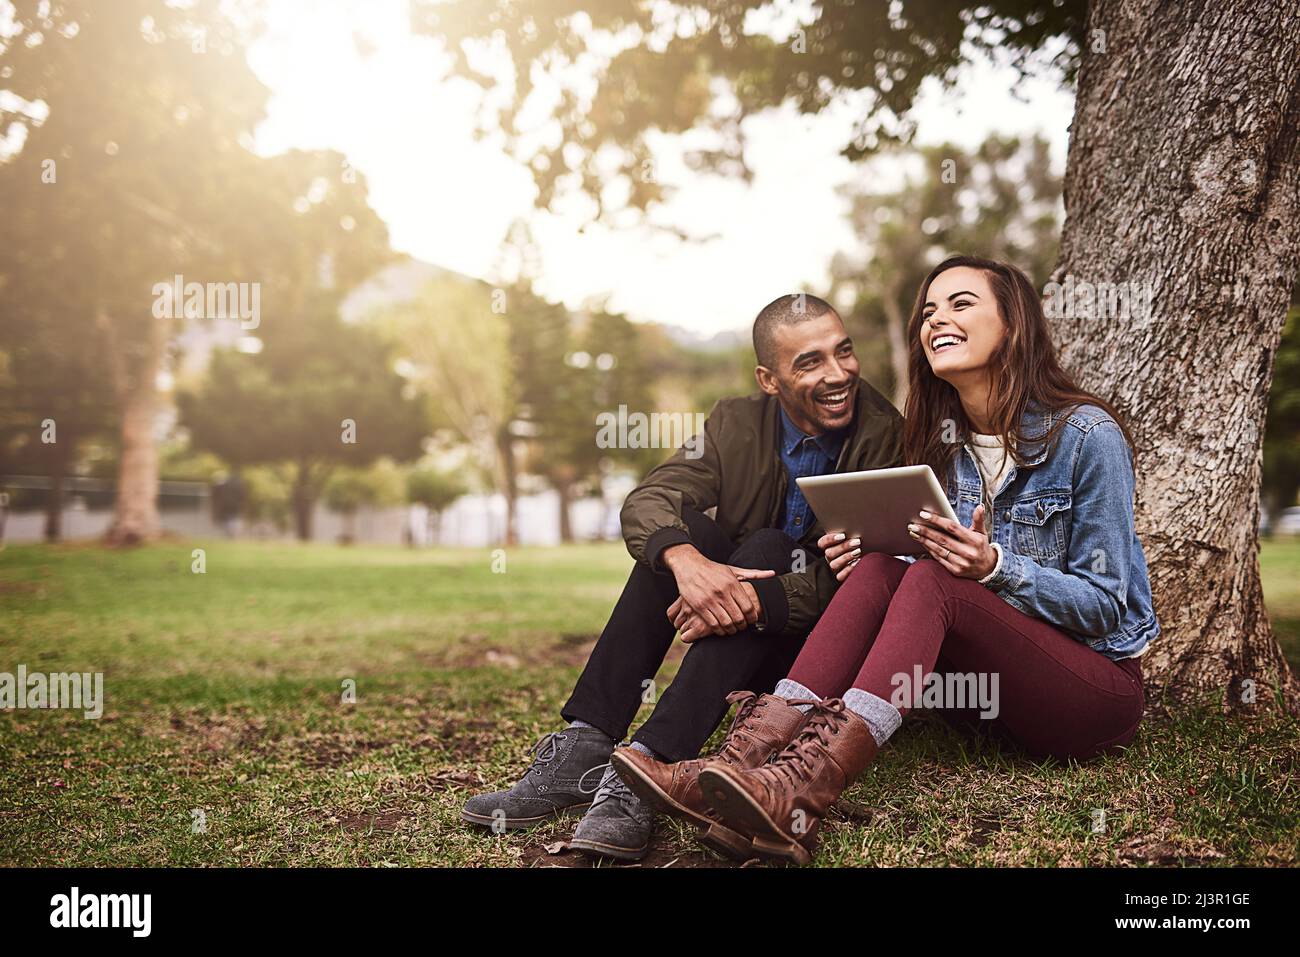 Mañanas tranquilas juntas. Foto de una alegre pareja joven sentada bajo un árbol con una tableta digital fuera en un parque. Foto de stock